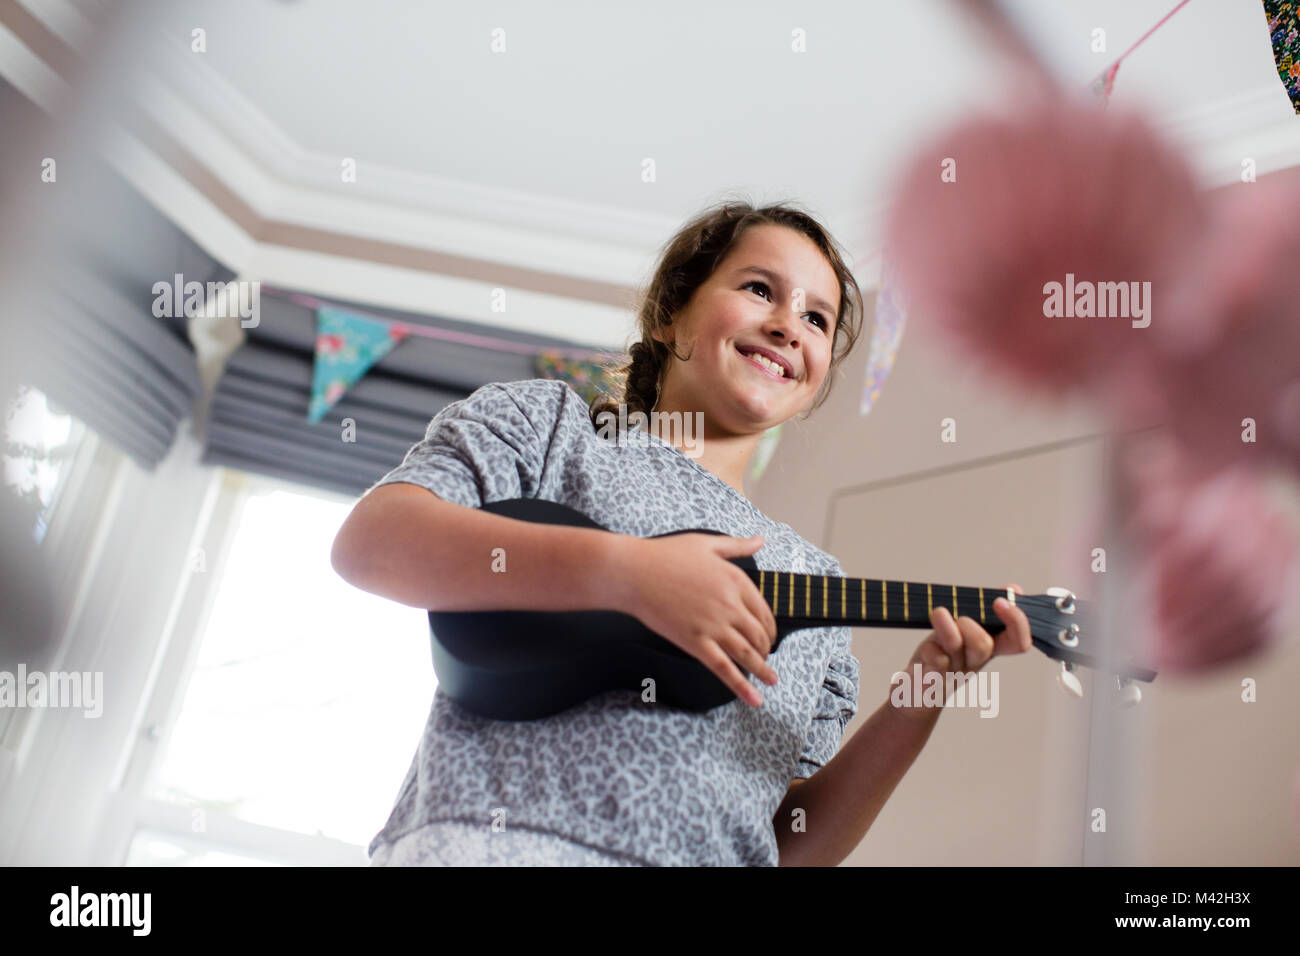 Girl playing a ukulele Stock Photo